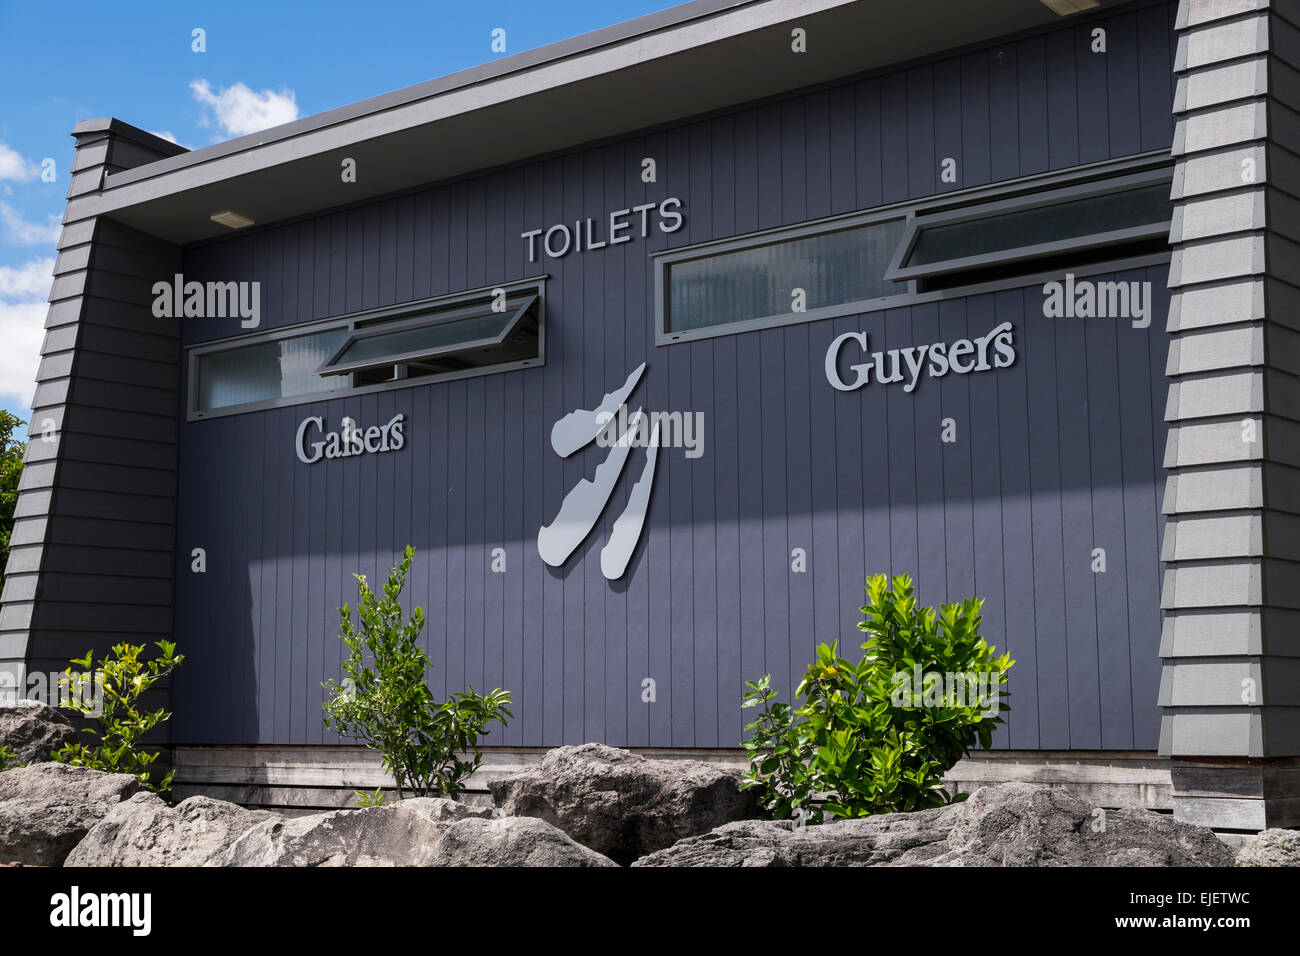 Humour du jeu de mots pour nommer les toilettes à la vallée géothermique Orakei Korako près de Taupo en Nouvelle-Zélande. Banque D'Images